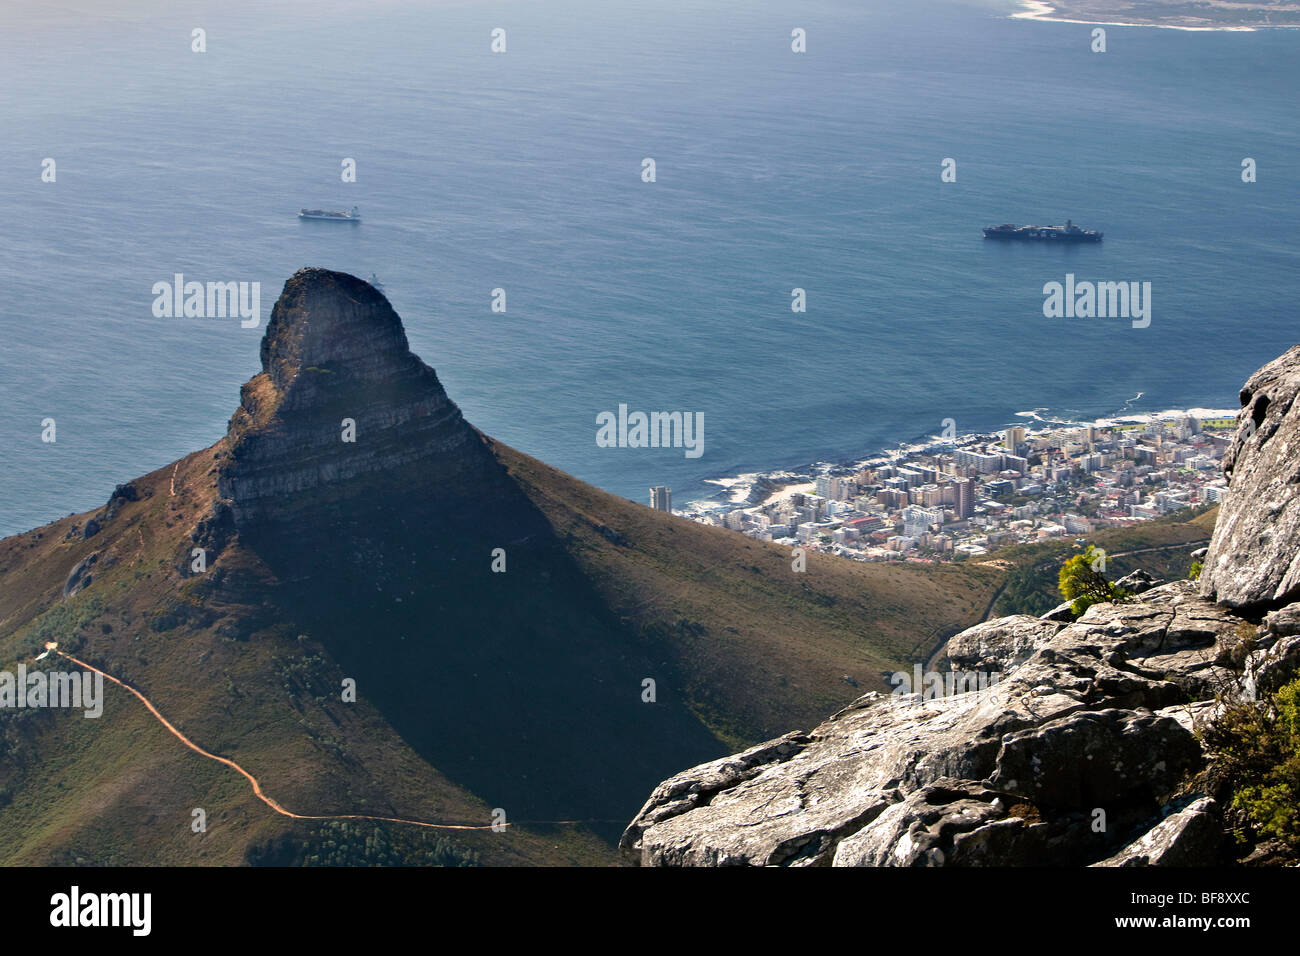 Vue de la ville du Cap et de la tête de Lion à partir de la crête de la Montagne de la table, Afrique du Sud. Banque D'Images